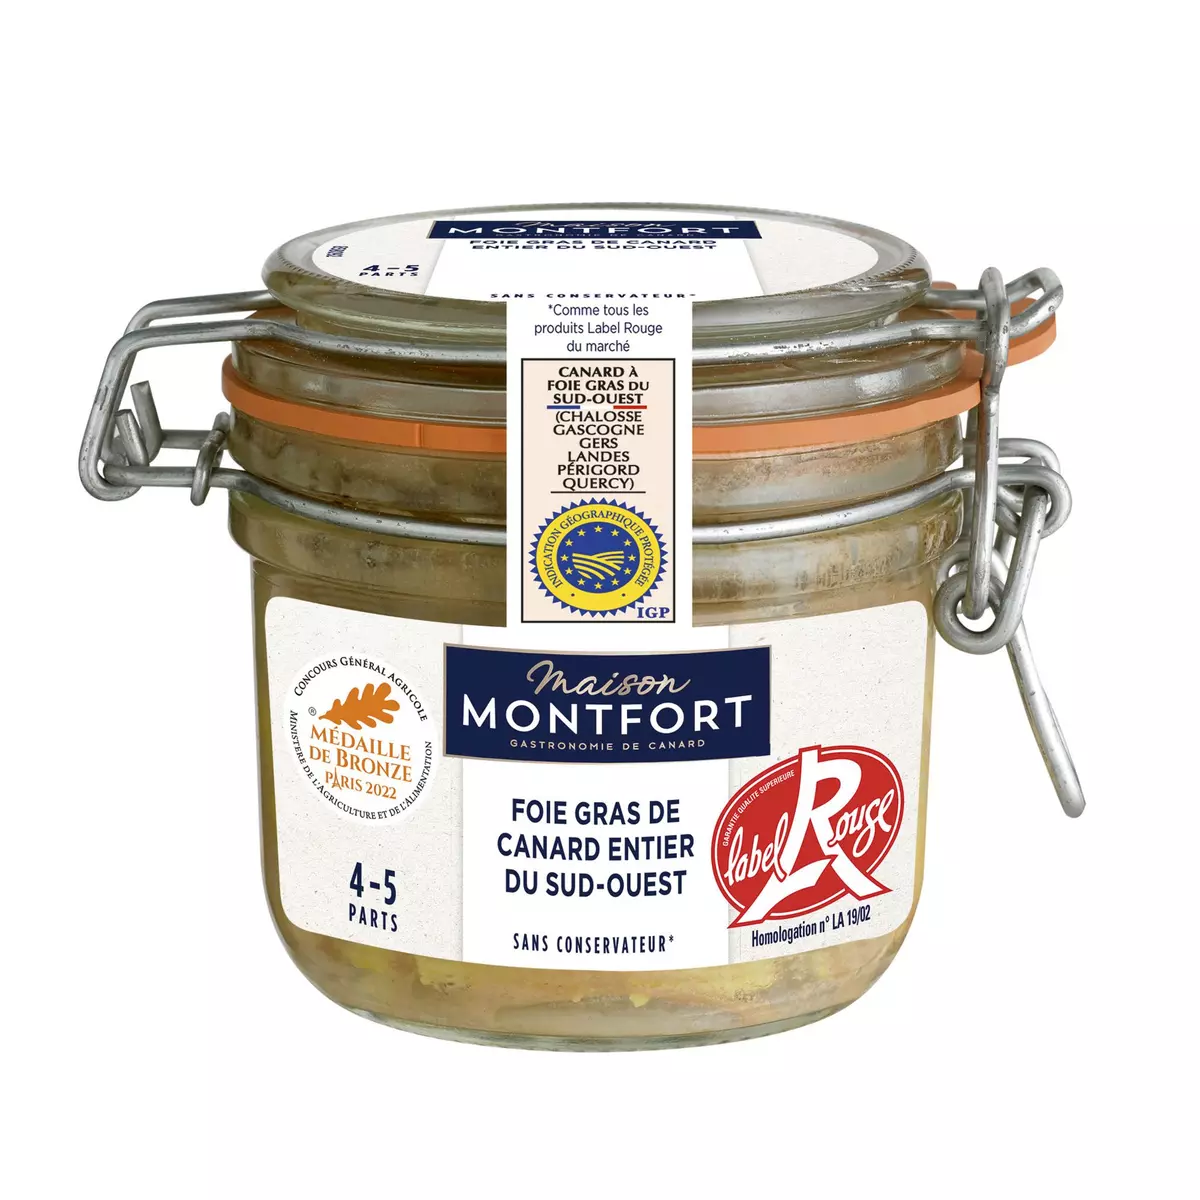 MAISON MONTFORT Foie gras de canard entier du Sud-Ouest Label Rouge IGP 4 - 5 parts 180g